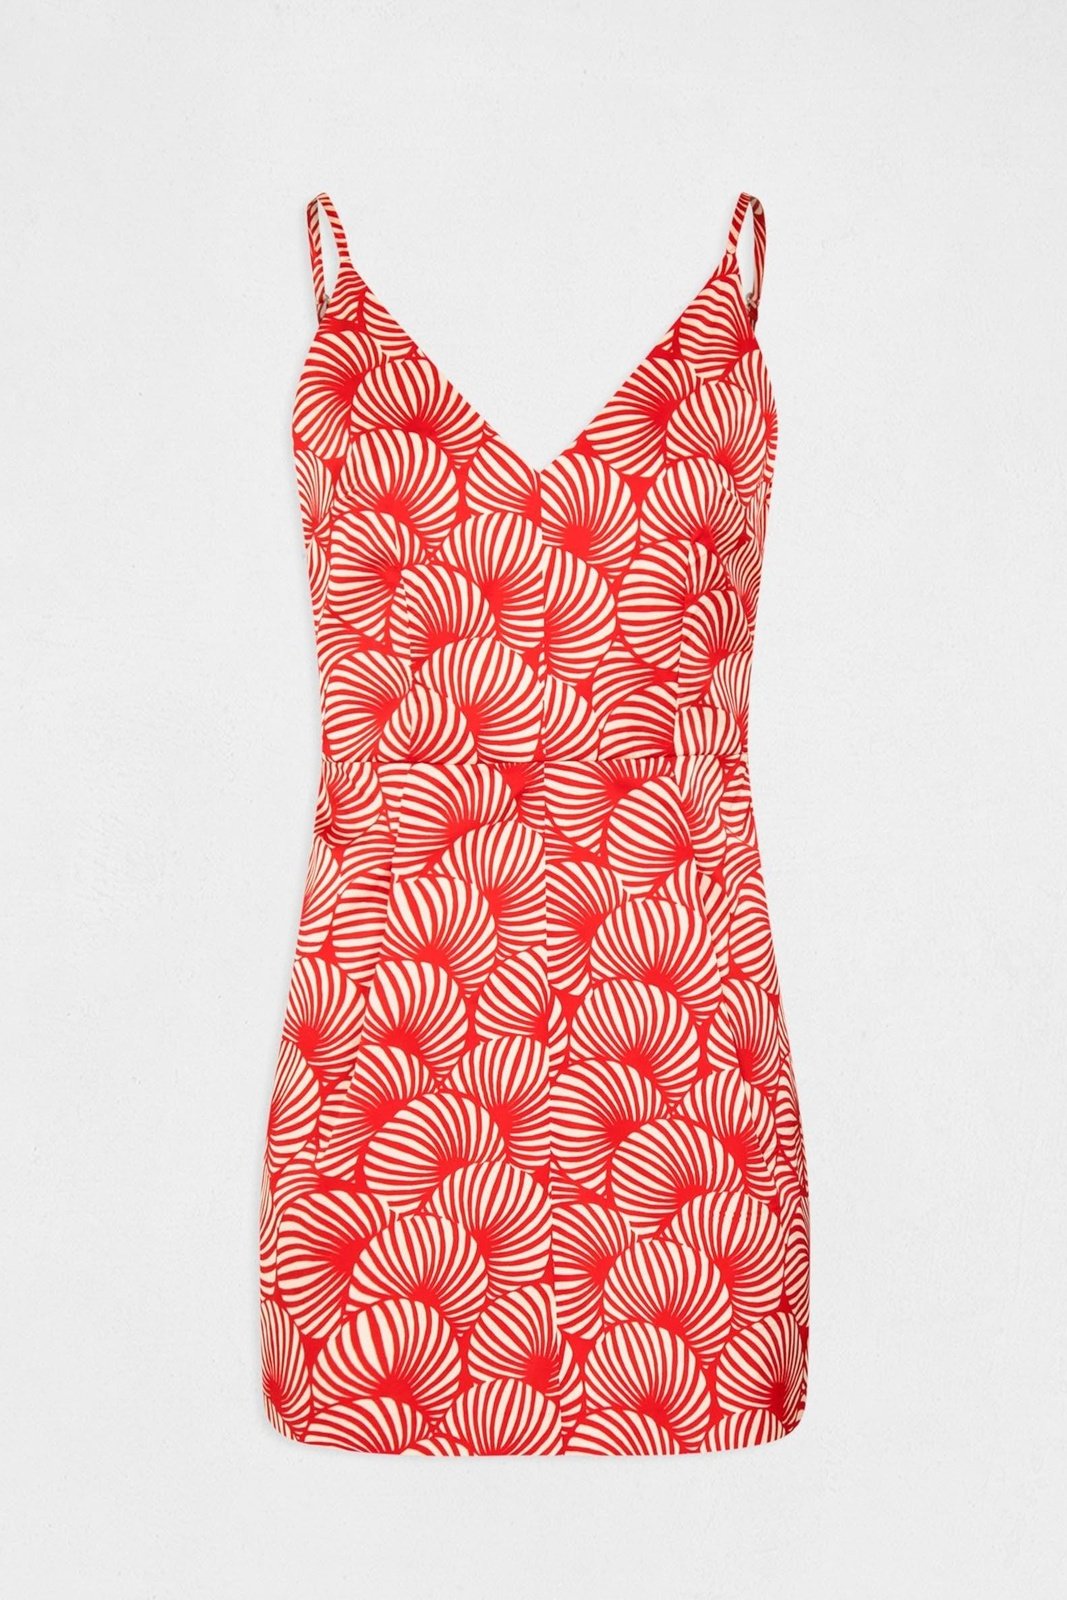 שמלת מיני עם רצועות דקות בצבע אדום - MASHBIR//365